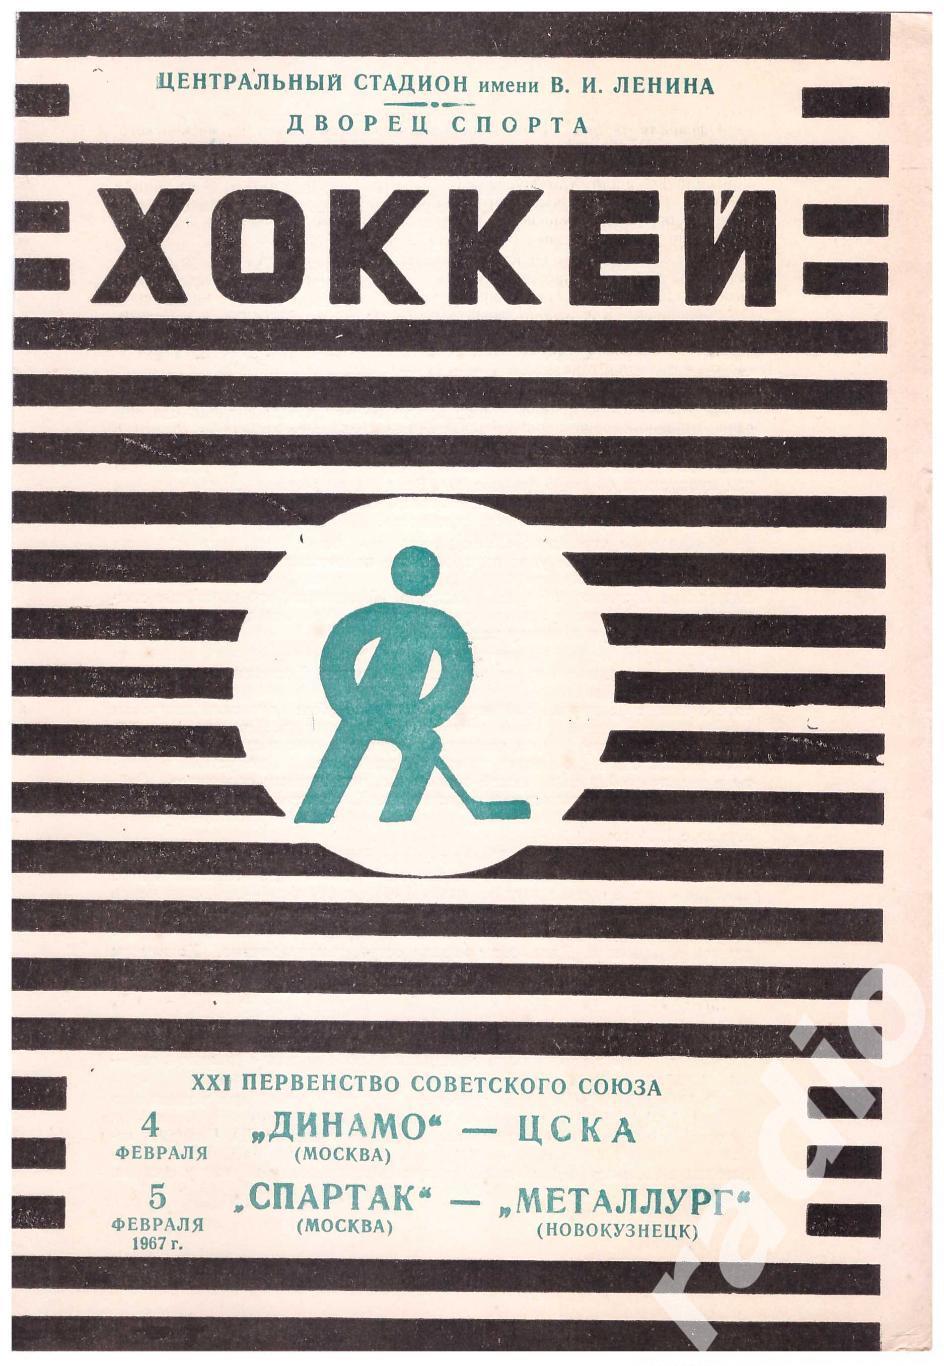 1967-02-04 Динамо Москва - ЦСКА 02-05 Спартак - Металлург Новокузнецк